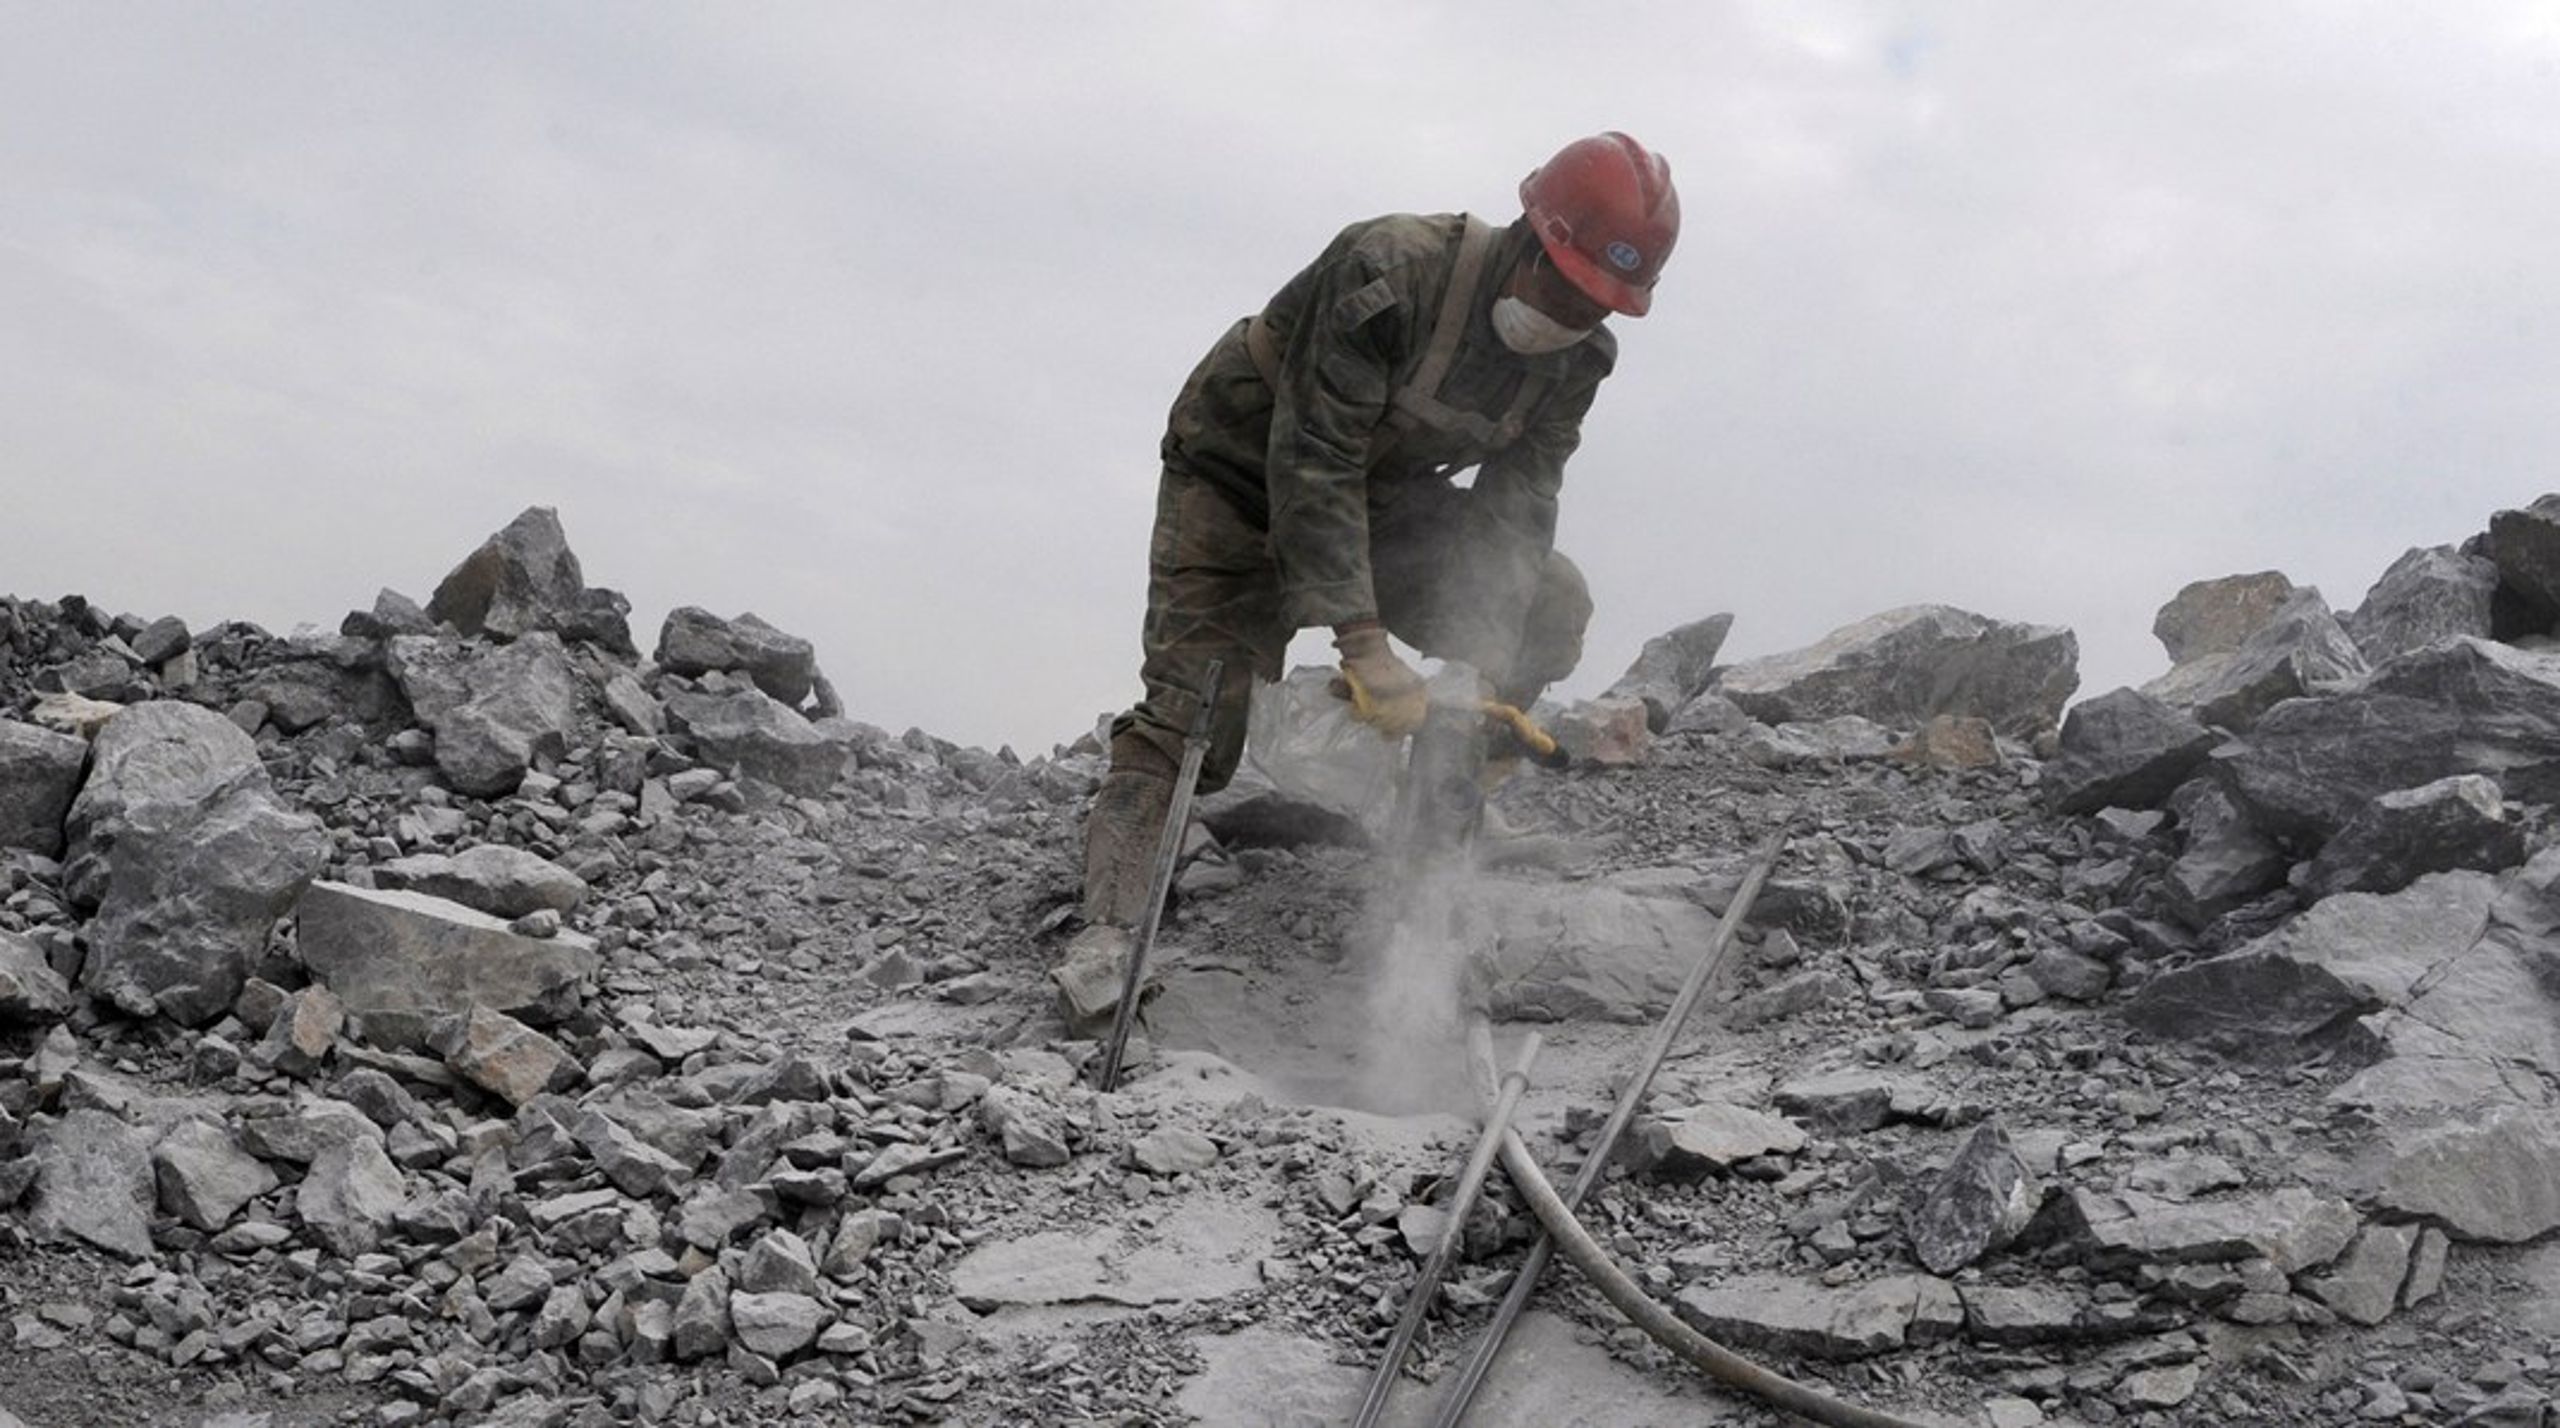 Kina møter 98 prosent av EUs behov for sjeldne jordarter. Her utvinner en arbeider kalkstein på et felt&nbsp;i&nbsp;Quzhou, Zhejiang i Kina. Kalkstein brukes&nbsp;blant annet&nbsp;til stål-, plast- og papirproduksjon.